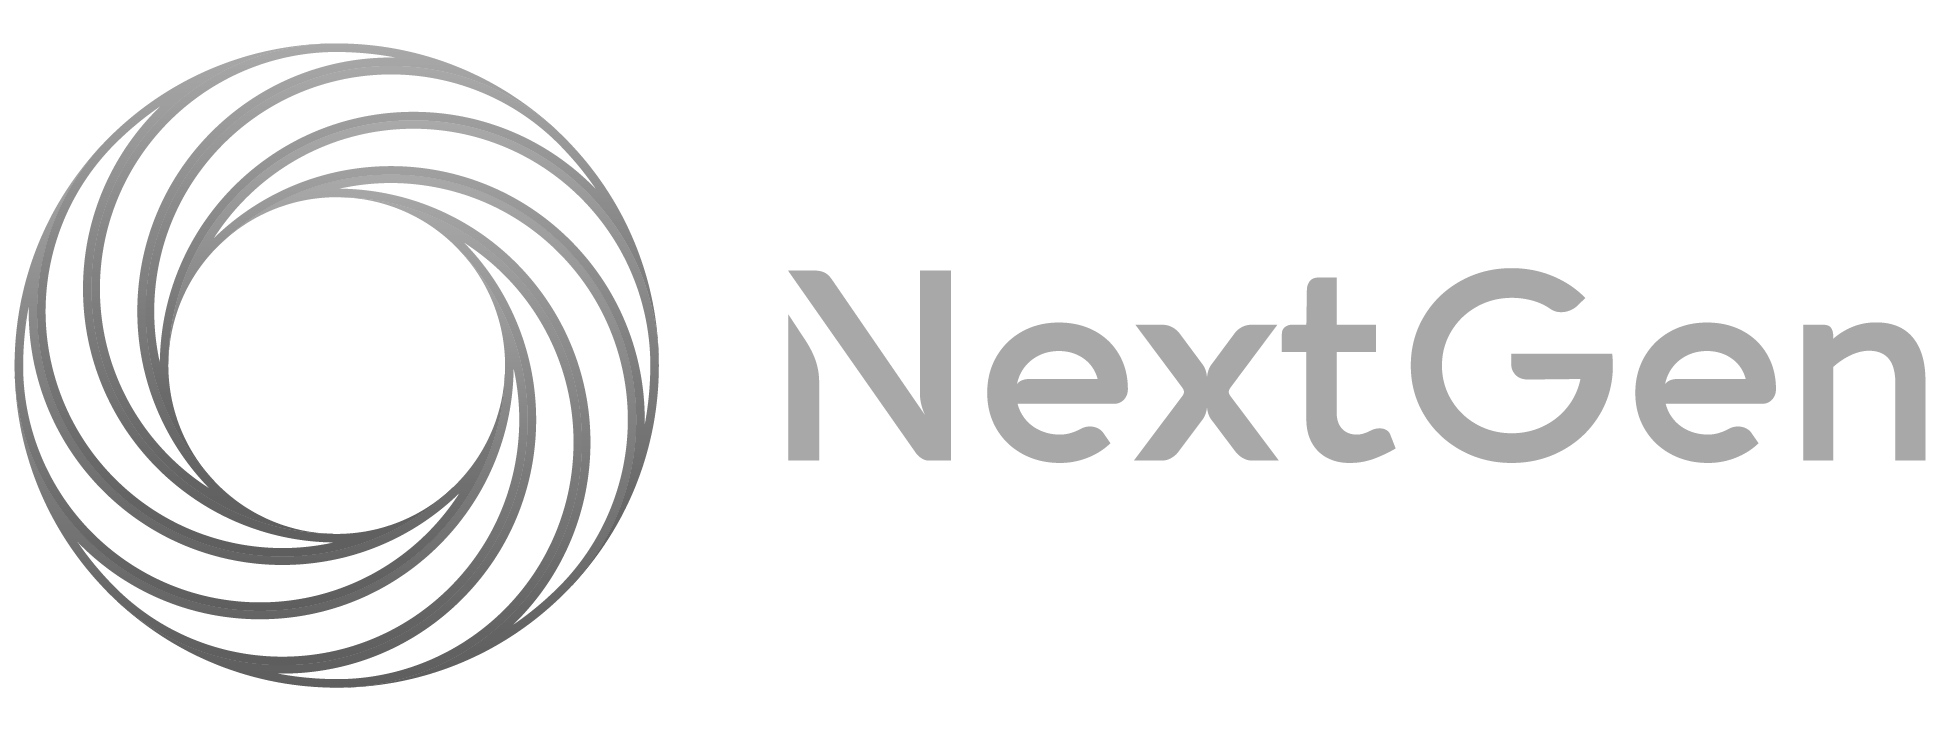 Katie Braden / Advisor Marketing Video featured in NextGen Planners